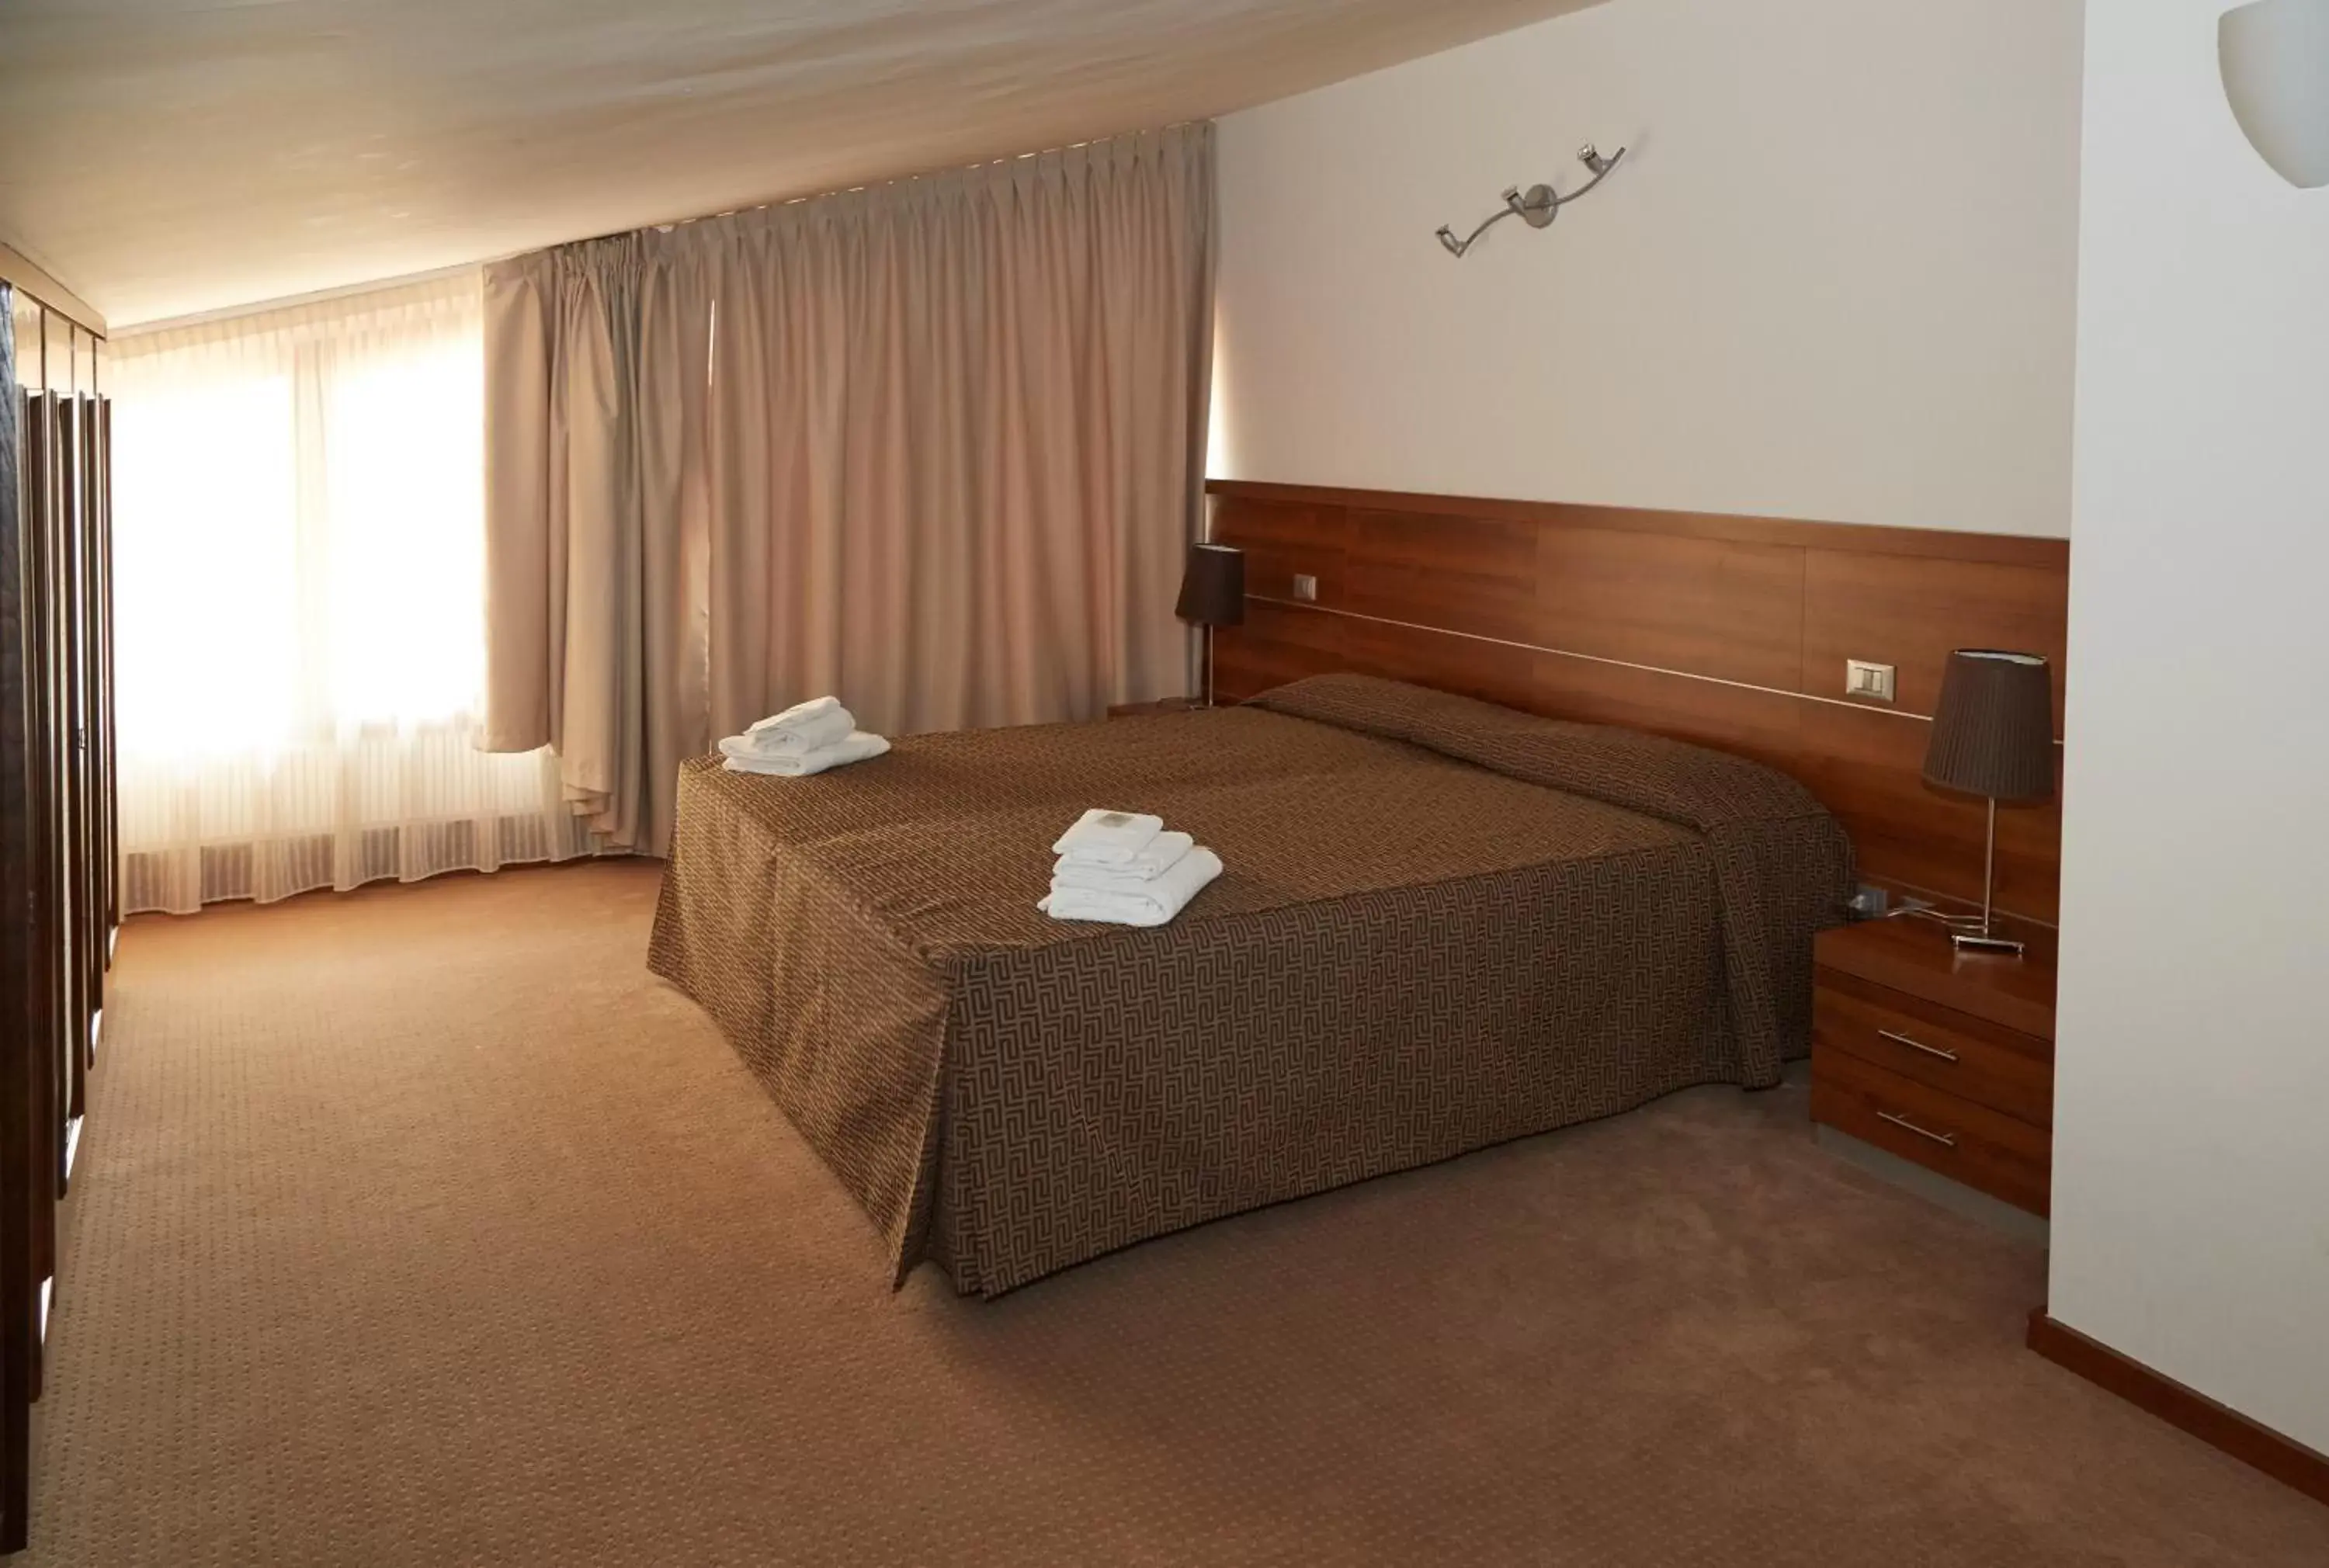 Bed in GREEN GARDEN Resort - Smart Hotel